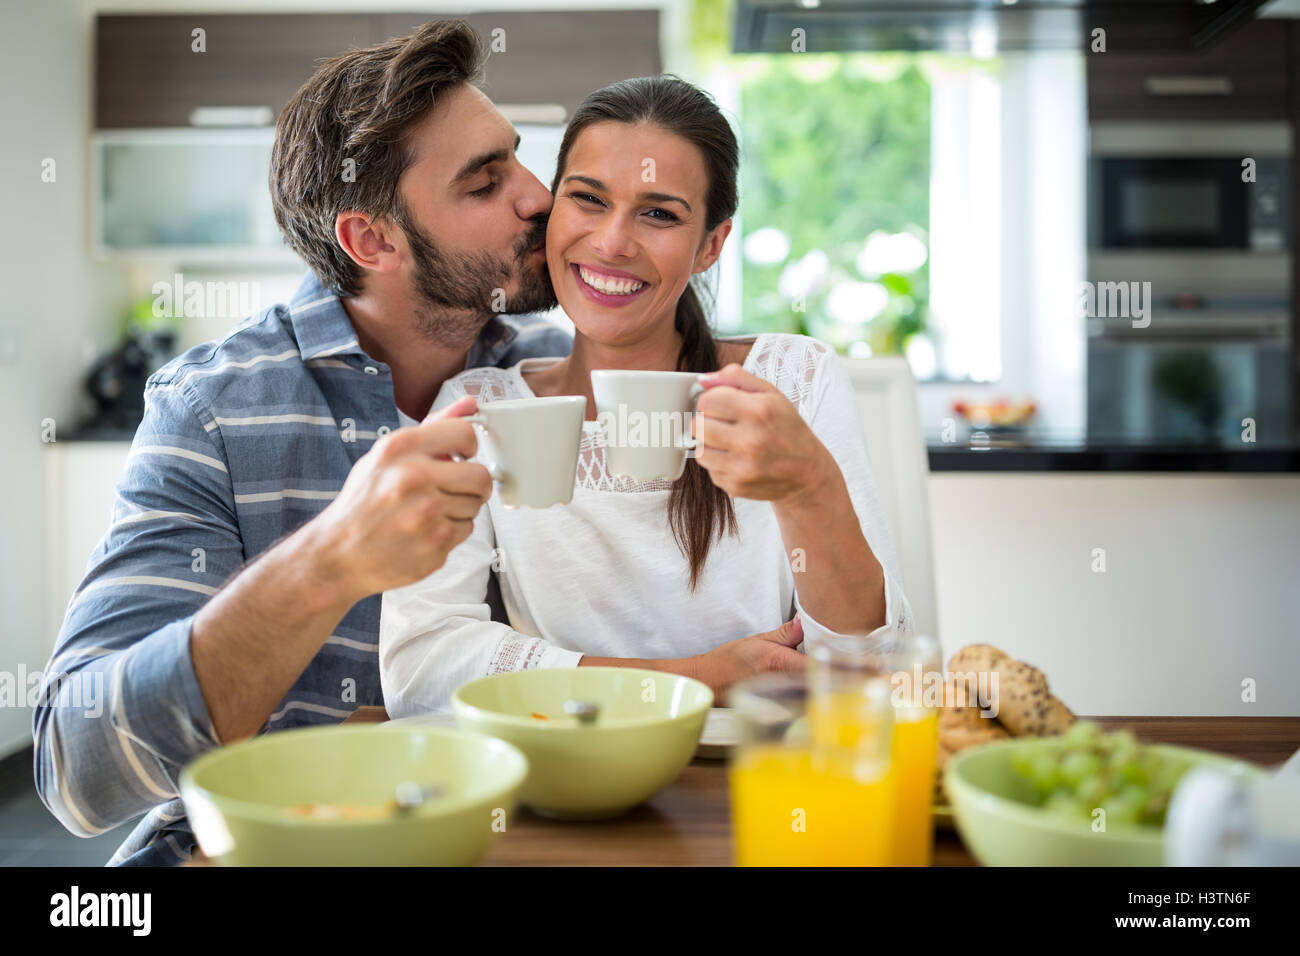 Mann beim Frühstück auf Frau Wangen küssen Stockfoto